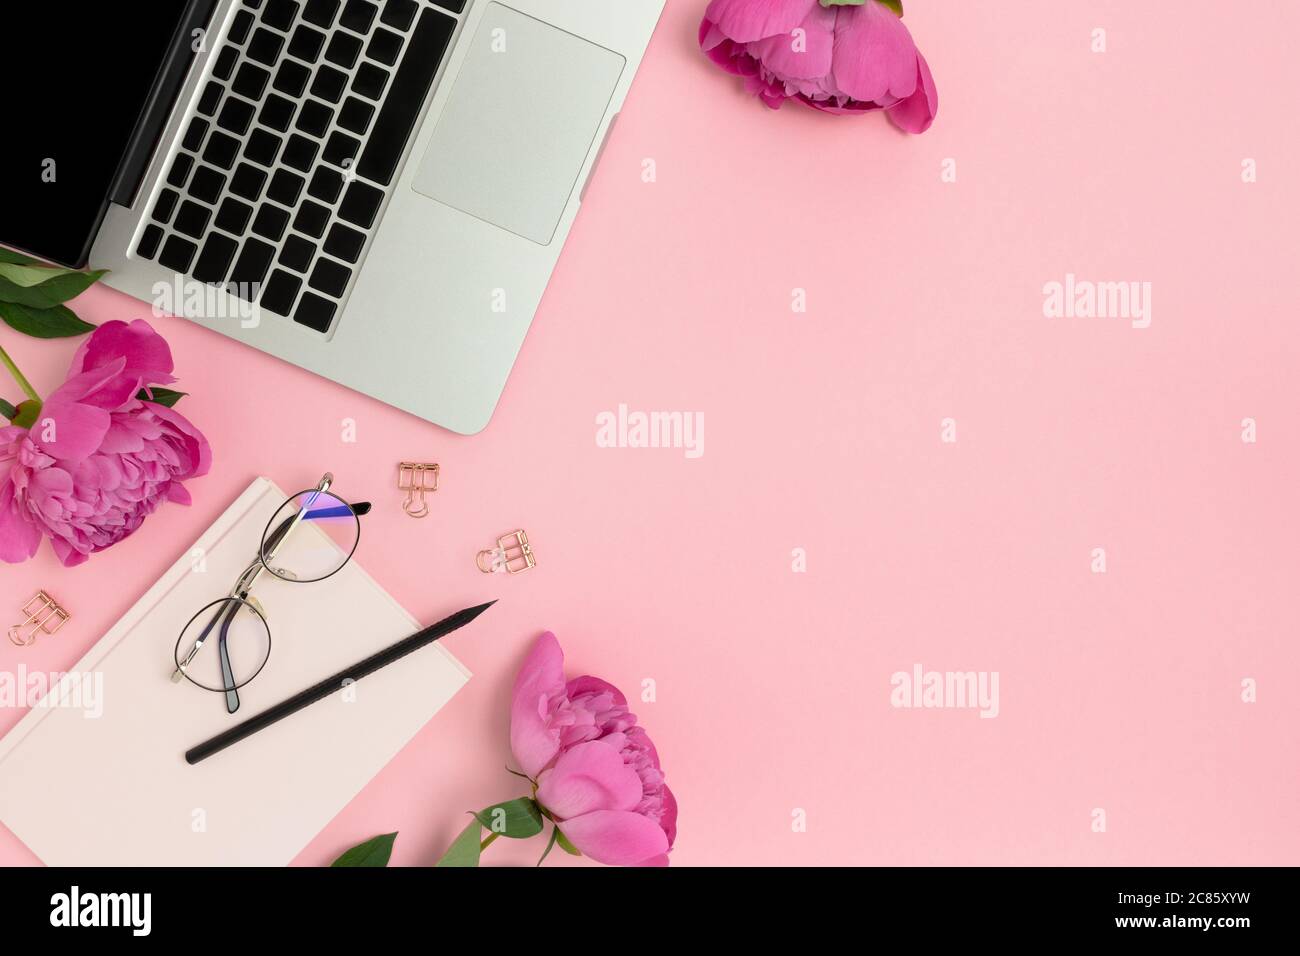 Laptop, văn phòng phẩm và hoa trên nền hồng pastel là sự kết hợp hoàn hảo giữa sự tinh tế và độc đáo. Với màu hồng nhạt và hoa tươi, nó mang lại sự tươi mới và thanh lịch cho không gian làm việc của bạn. 